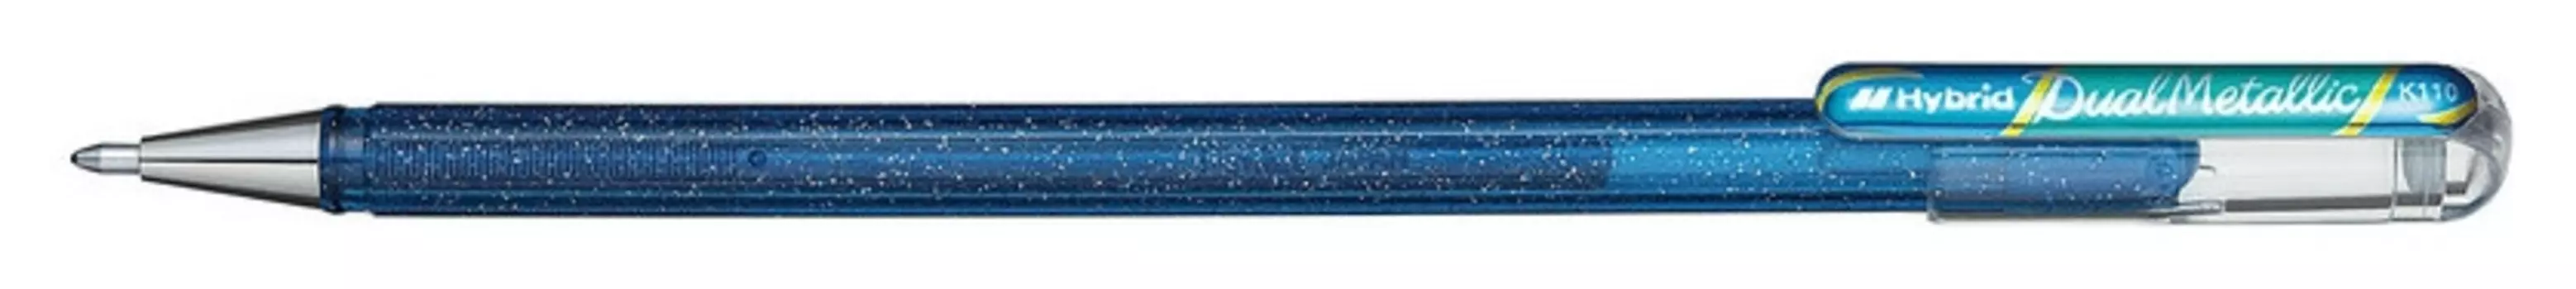 Ручка гелевая Pentel Hibrid Dual Metallic 0,55мм хамелеон синий+зеленый